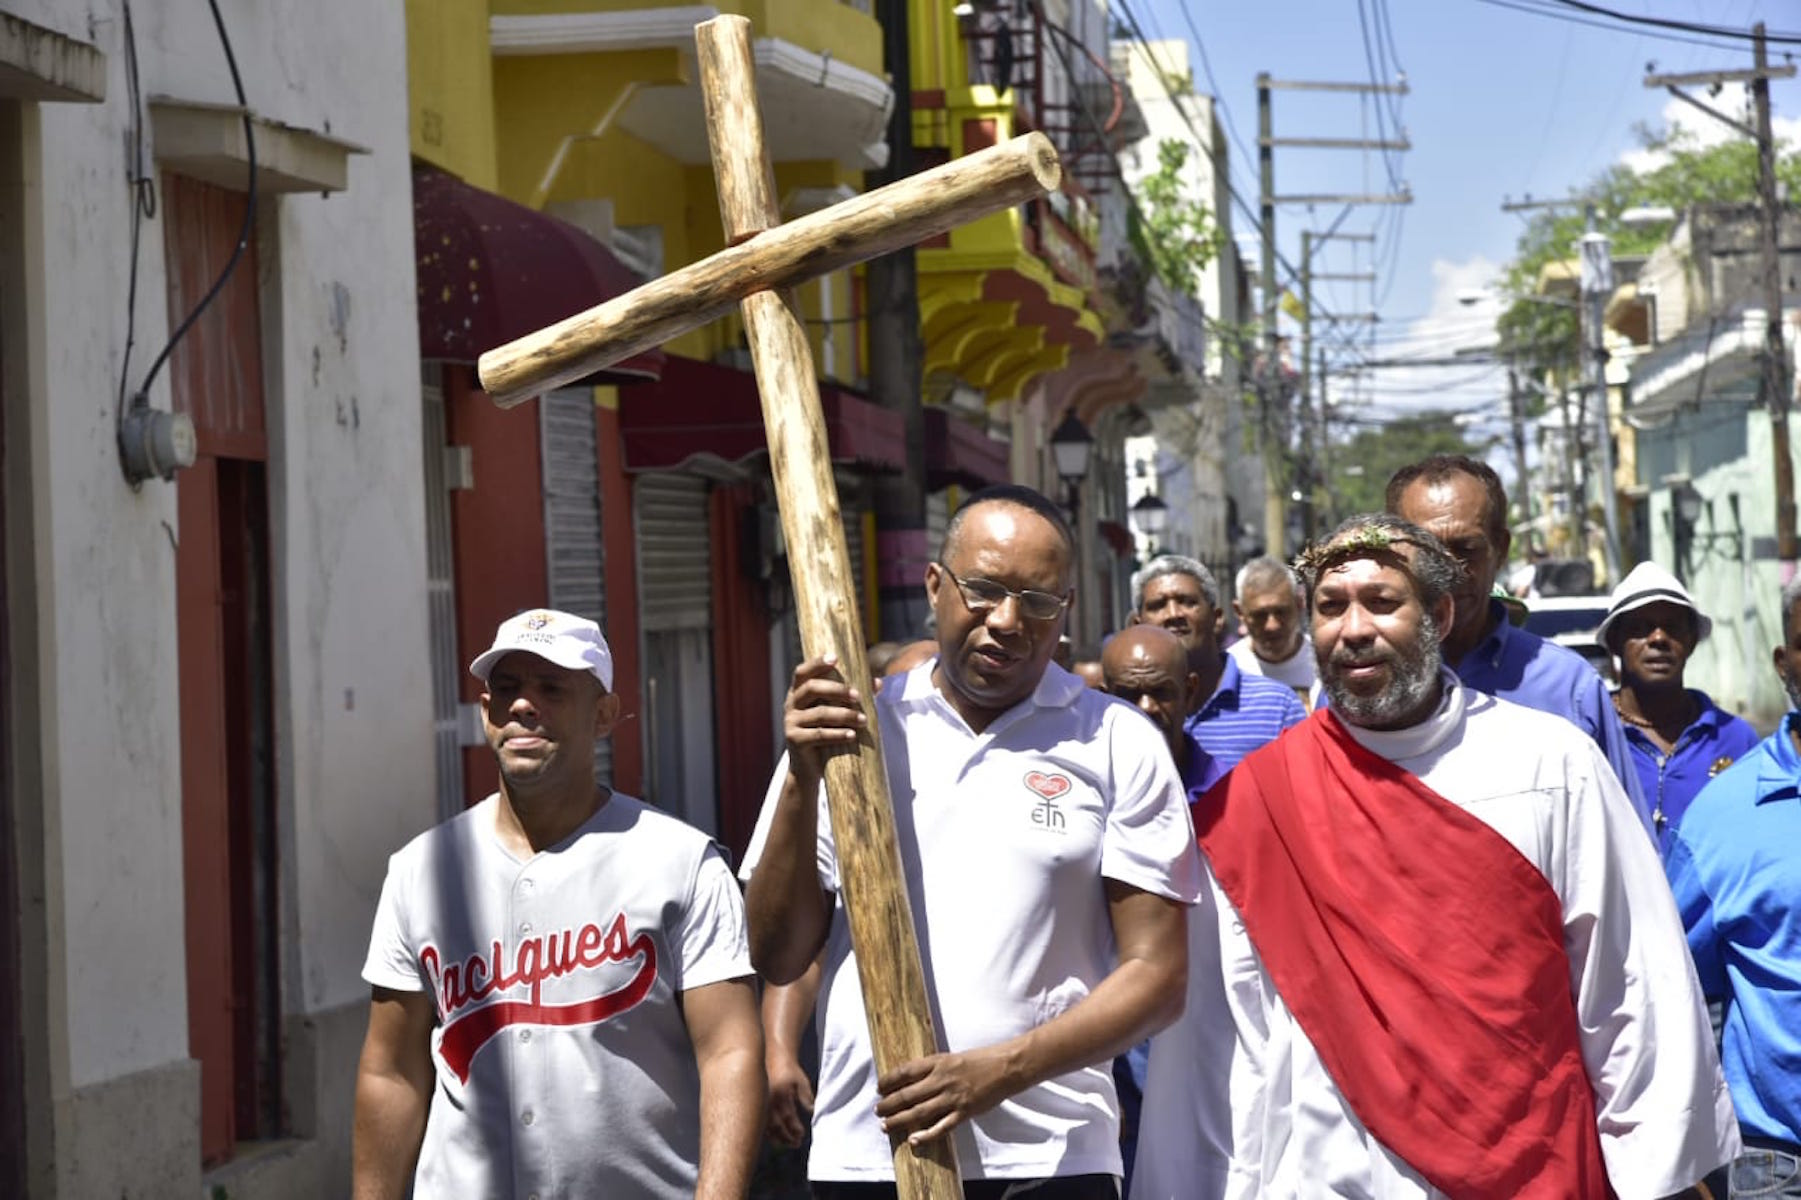 Devotos de la Santa Cruz se dirigen en procesión hacia la iglesia Nuestra Señora del Carmen en la zona colonial de Santo Domingo, República Dominicana. Viernes 19 de abril de 2019.